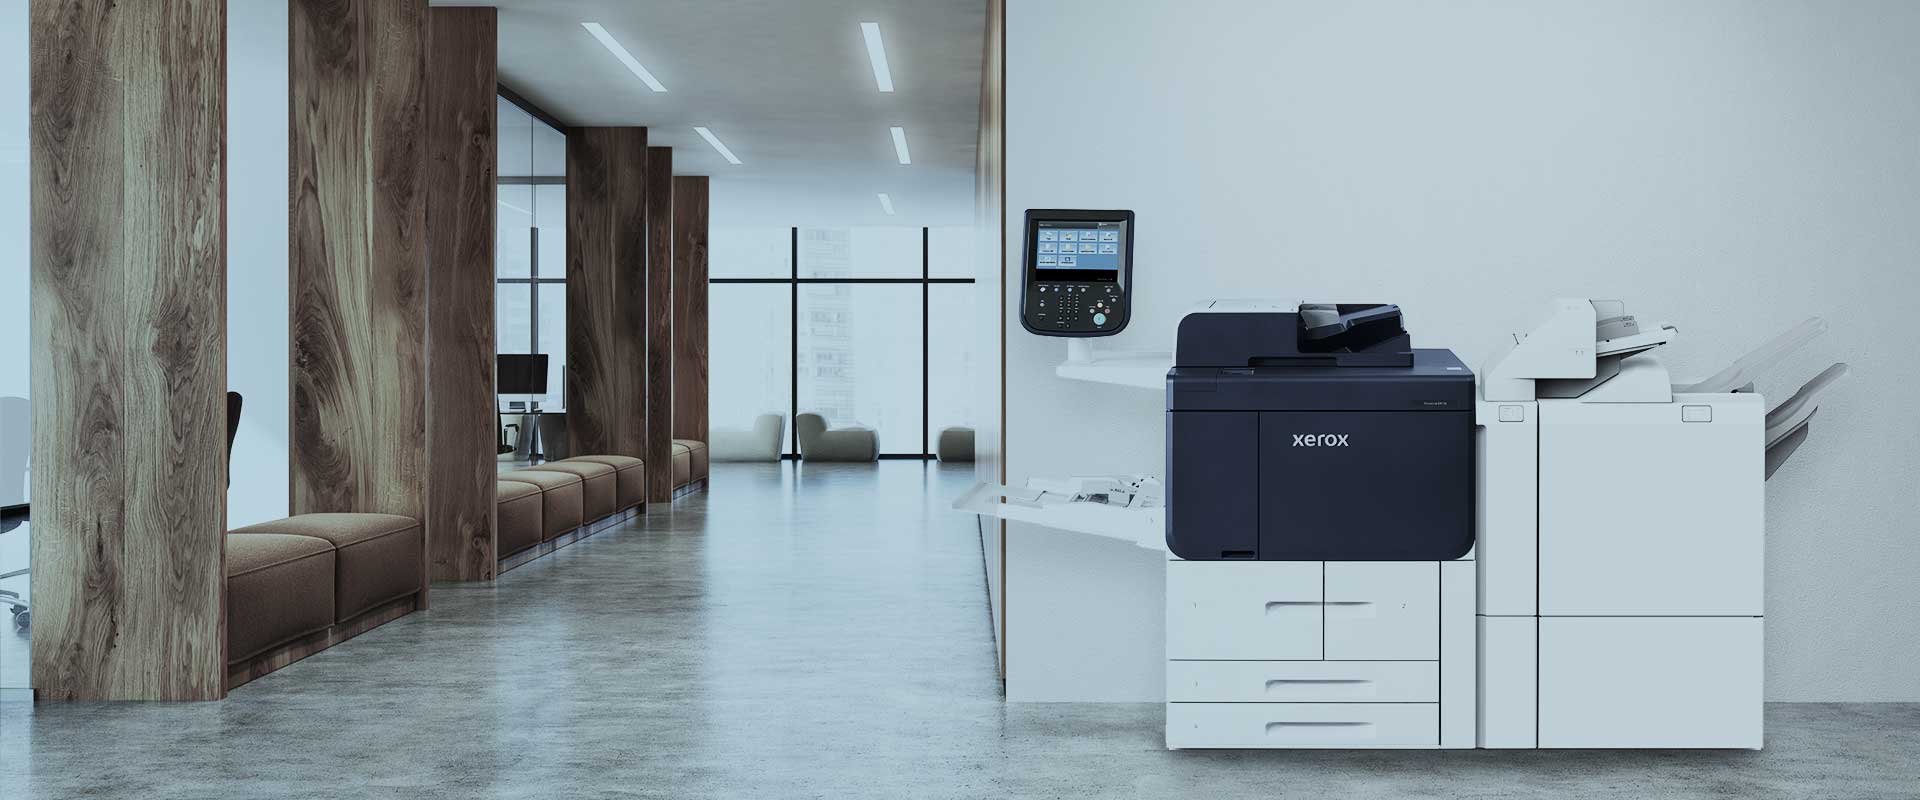 Máy photocopy Fuji Xerox rất được nhiều doanh nghiệp tin dùng